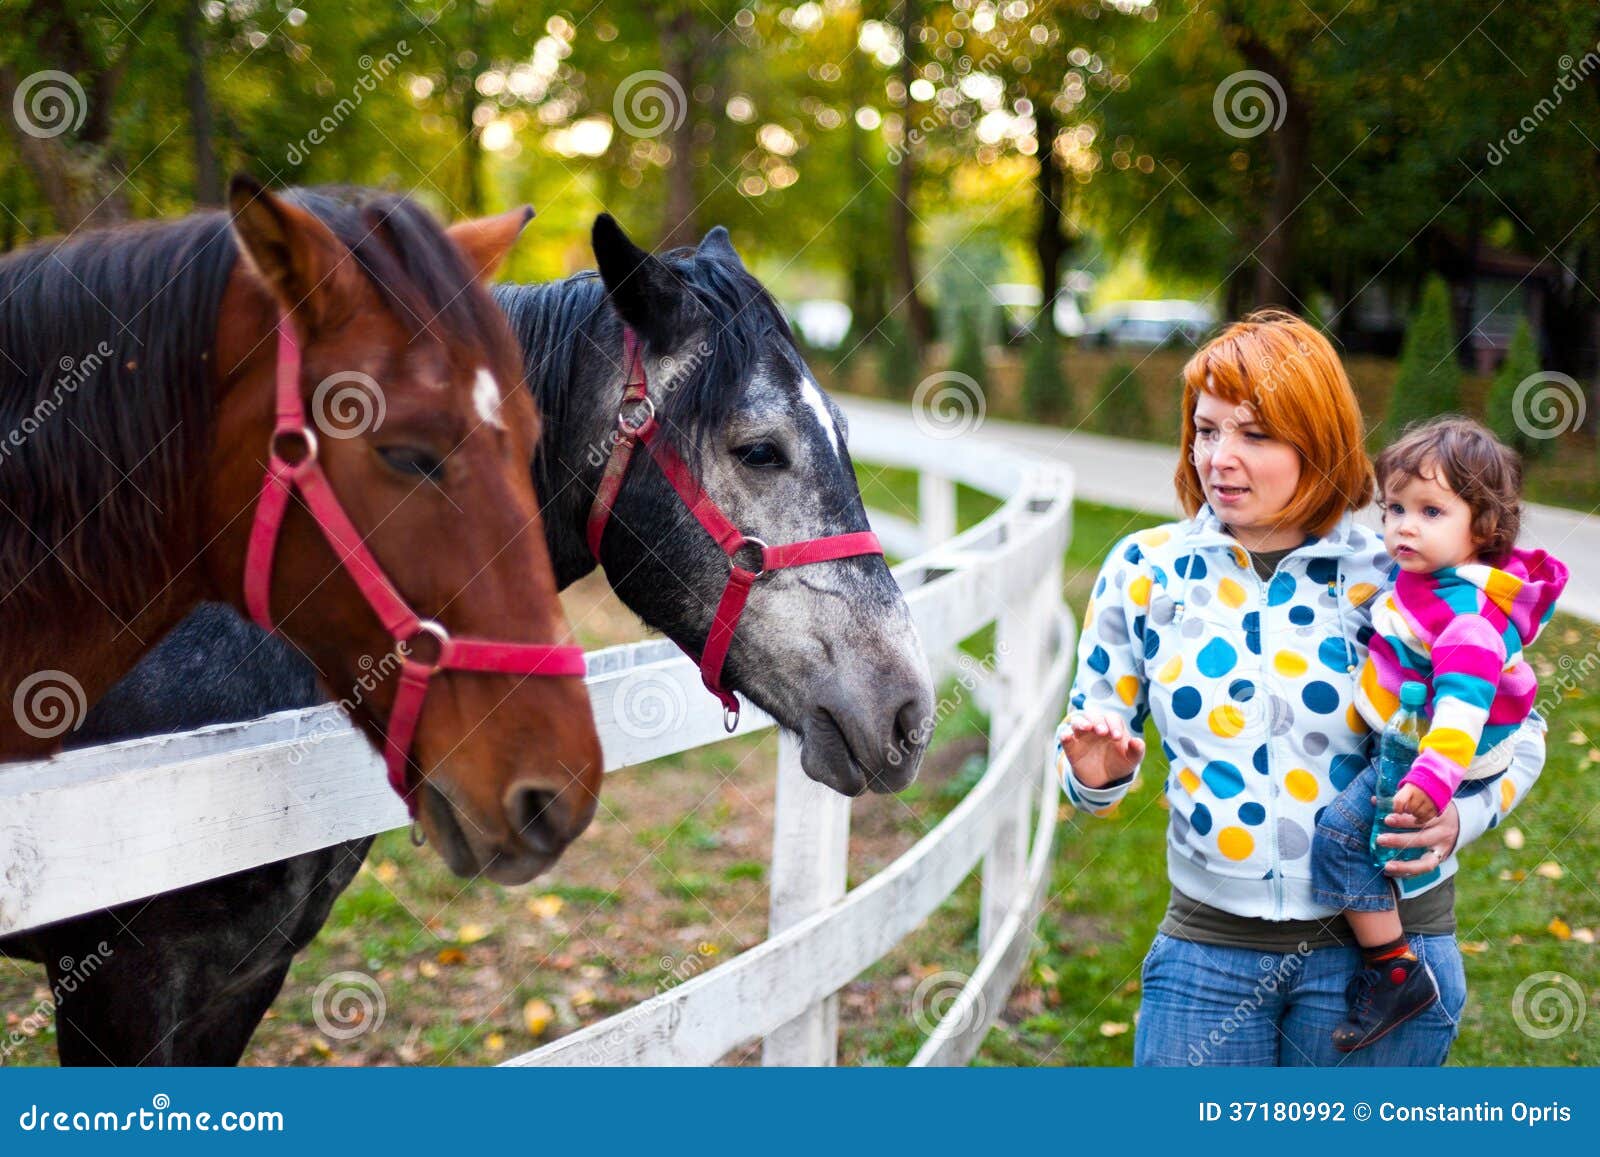 admiring horses